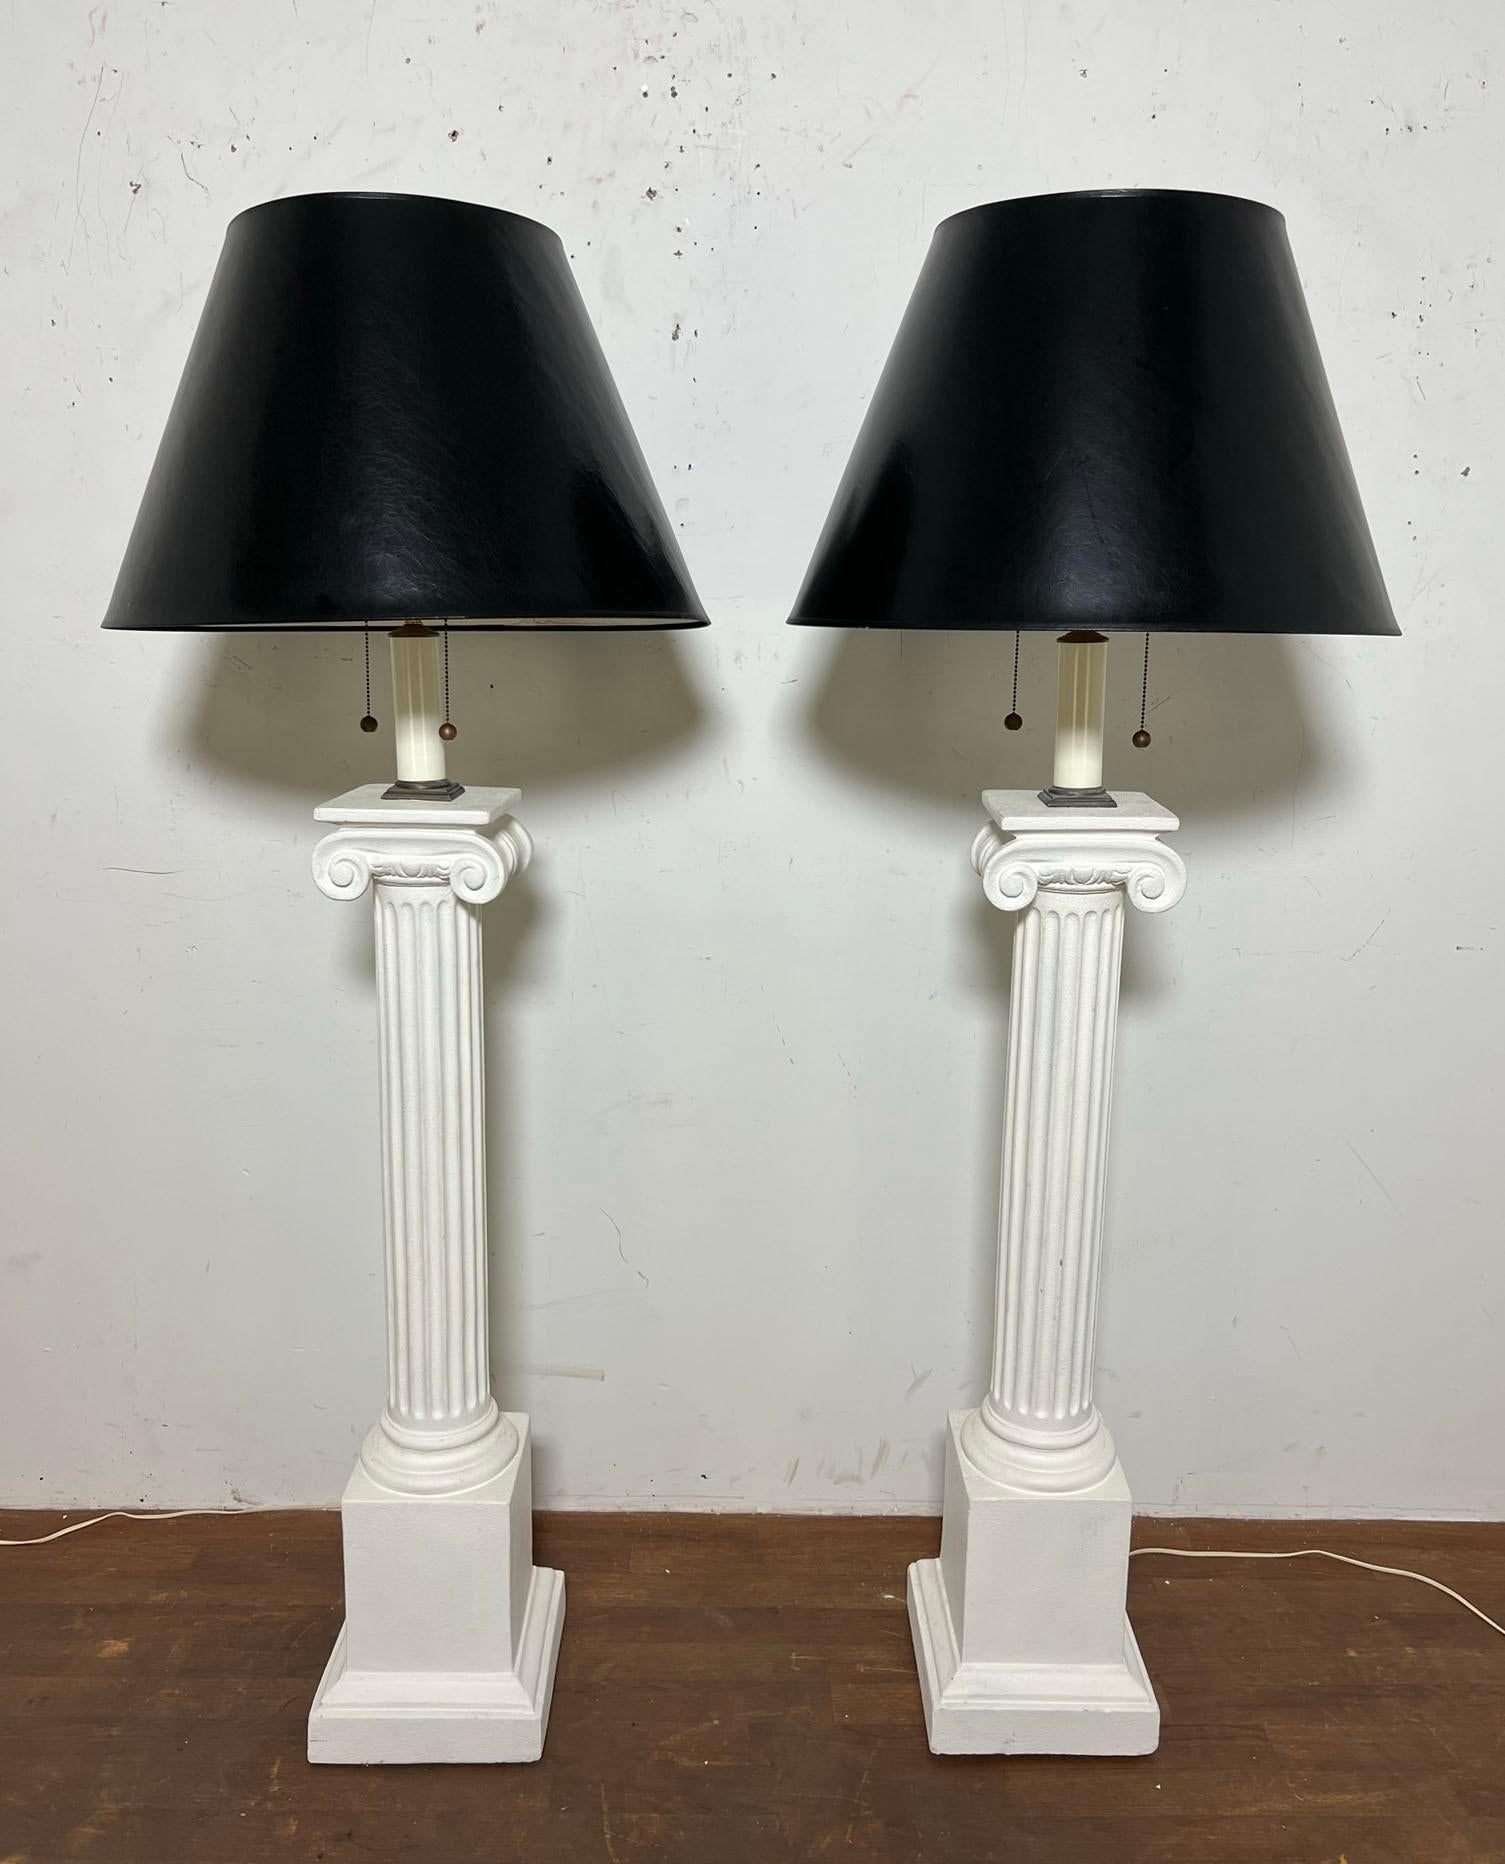 Ein Paar skulpturale Stehlampen aus Gips von Bob Graham, ca. 1980er Jahre. Diese sind in der Höhe verstellbar und haben die originalen schwarzen Lackschalen.

64,5